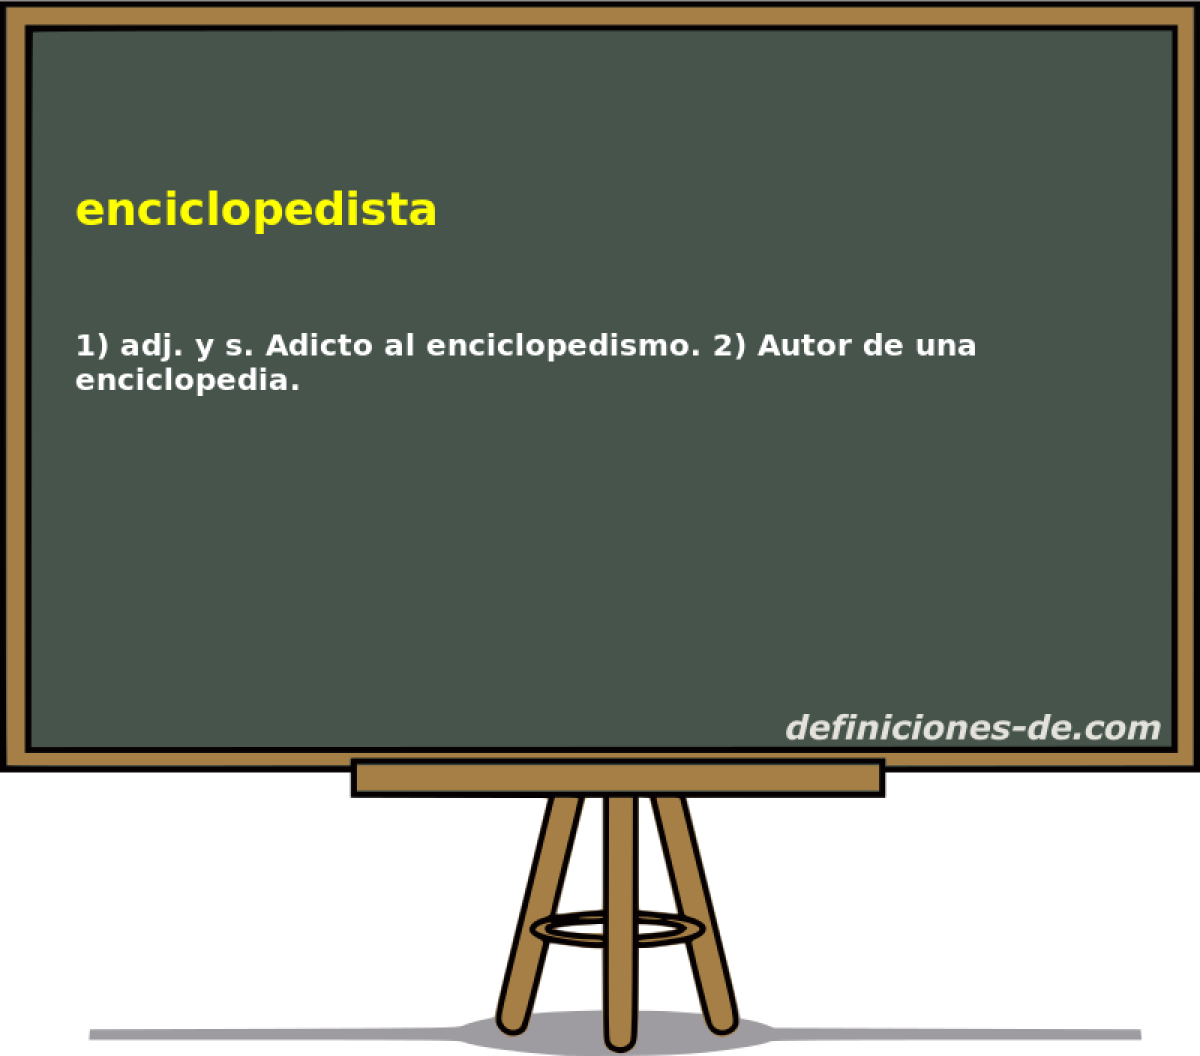 enciclopedista 